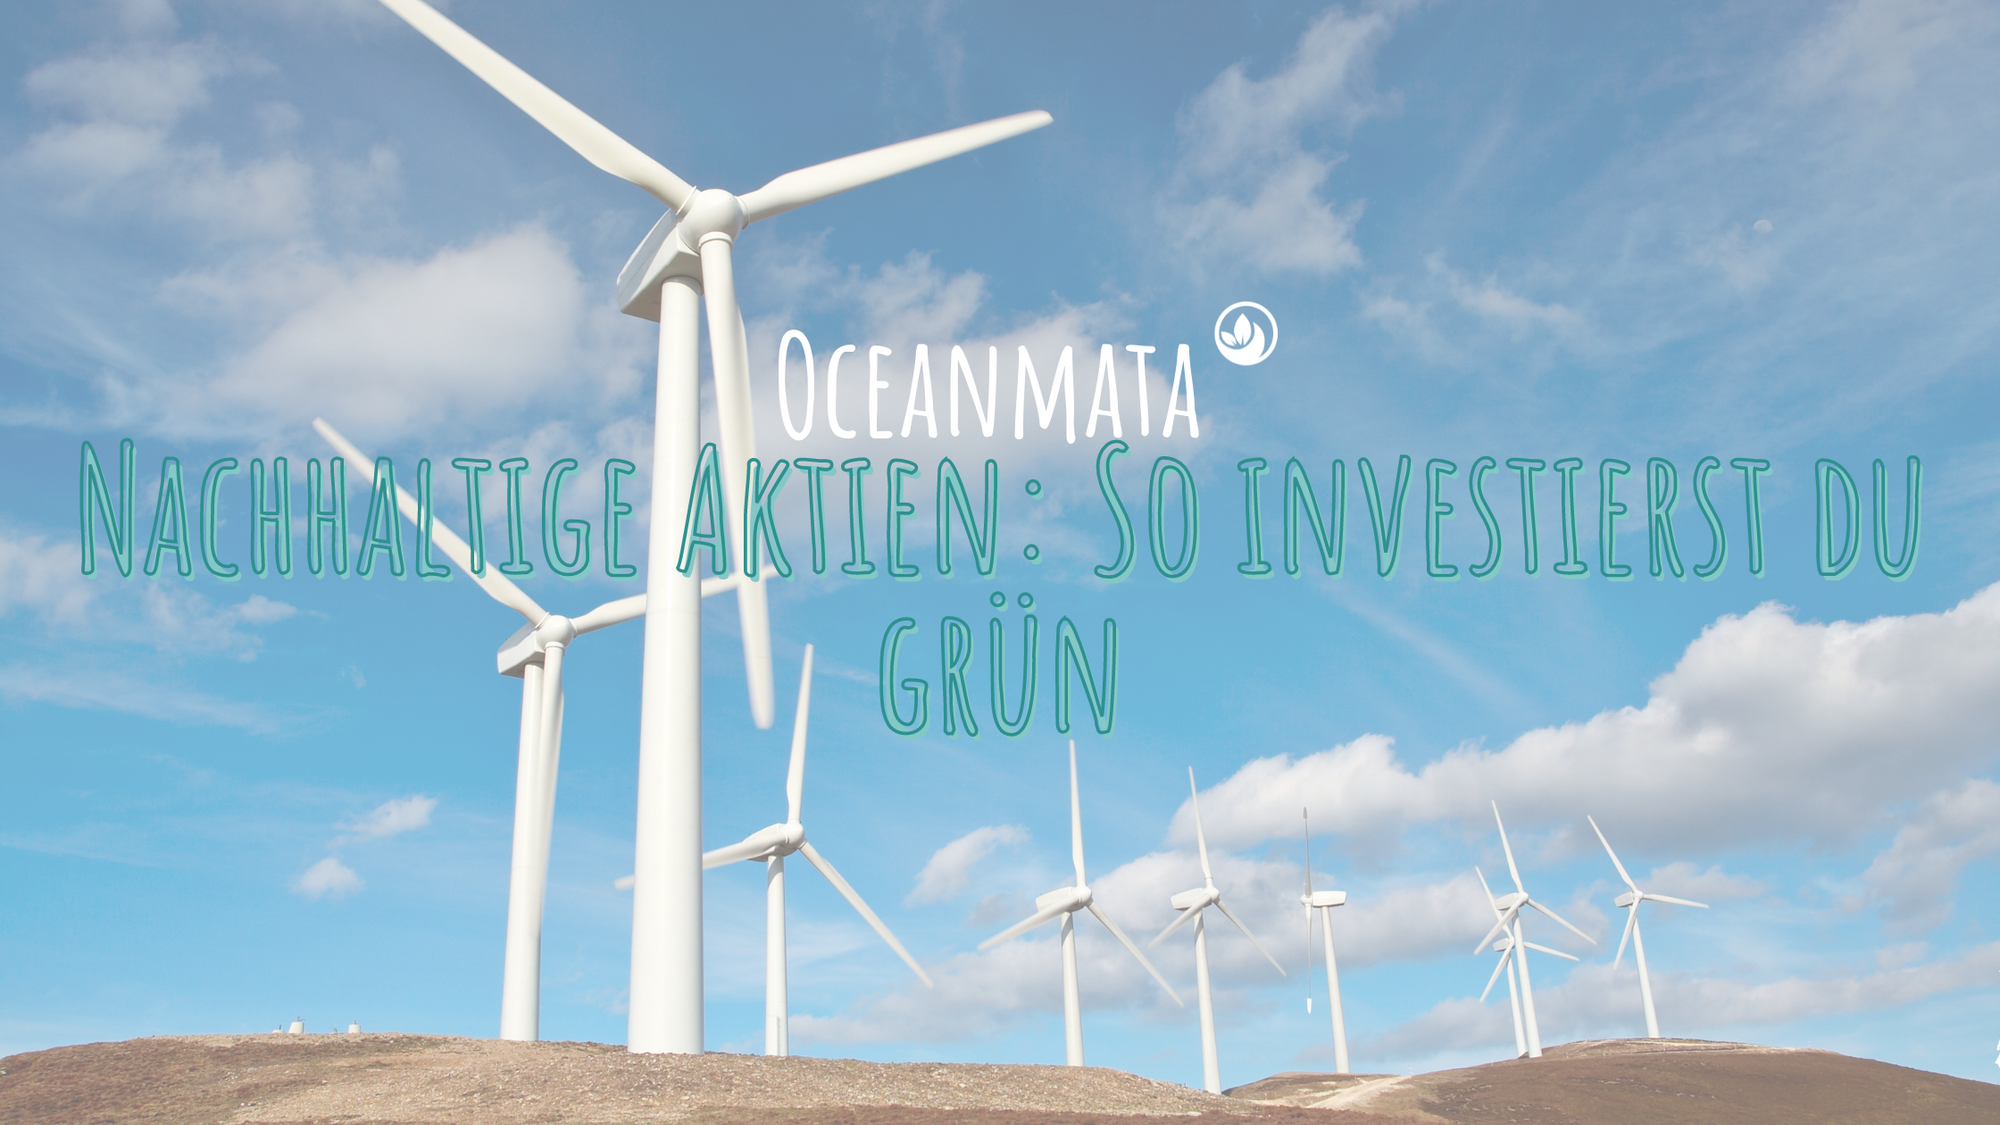 Nachhaltige Aktien: So investierst du grün